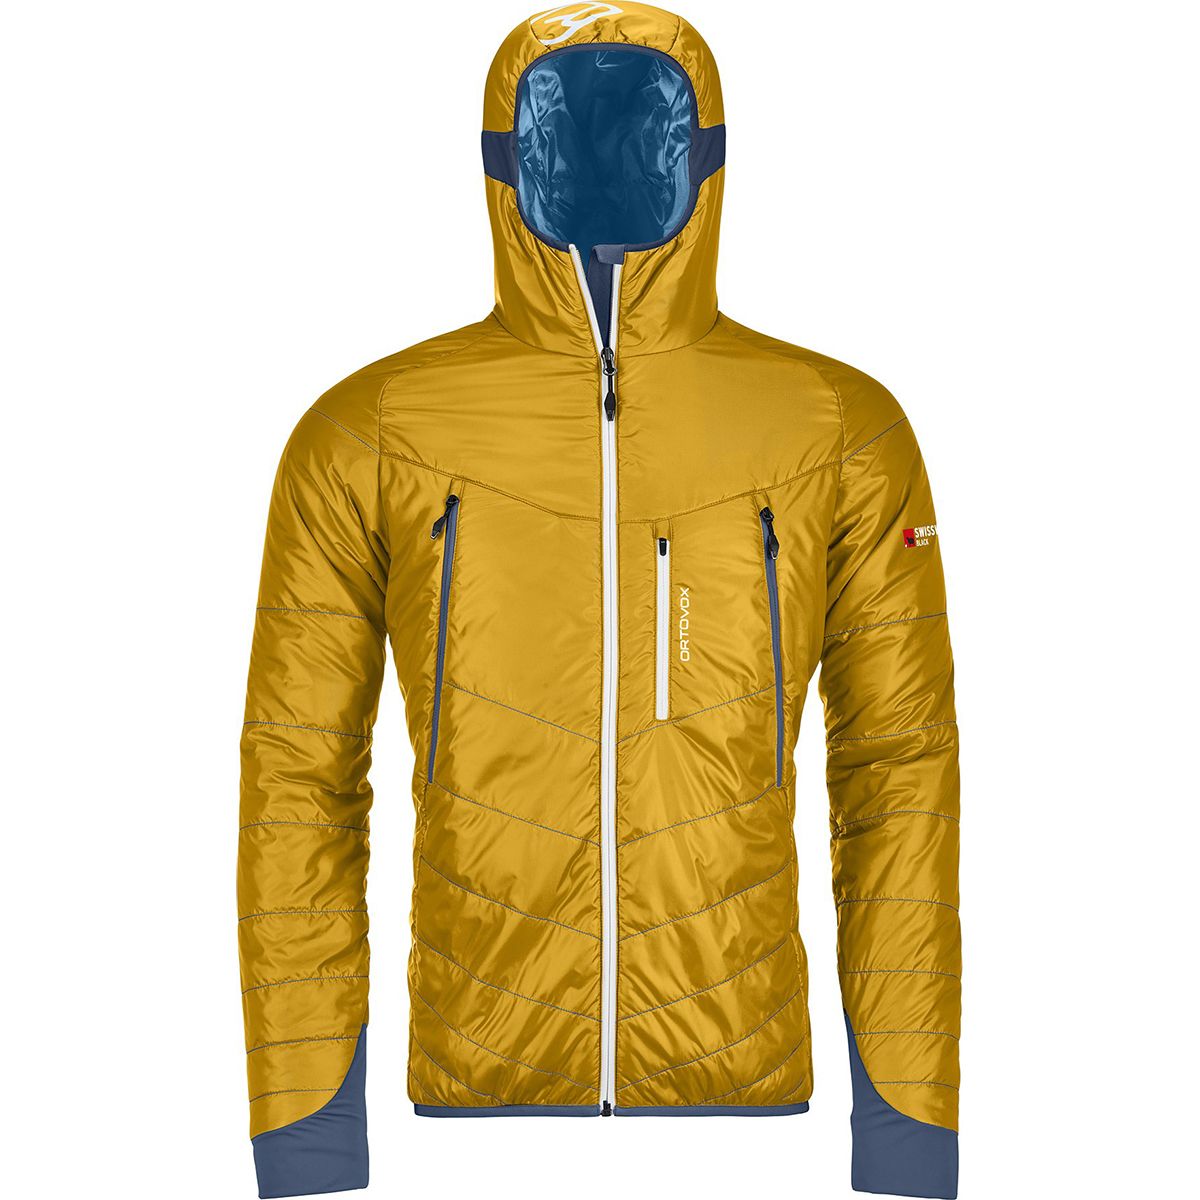 Ortovox Piz Boe Light Tec Insulated Jacket - Men's | Backcountry.com